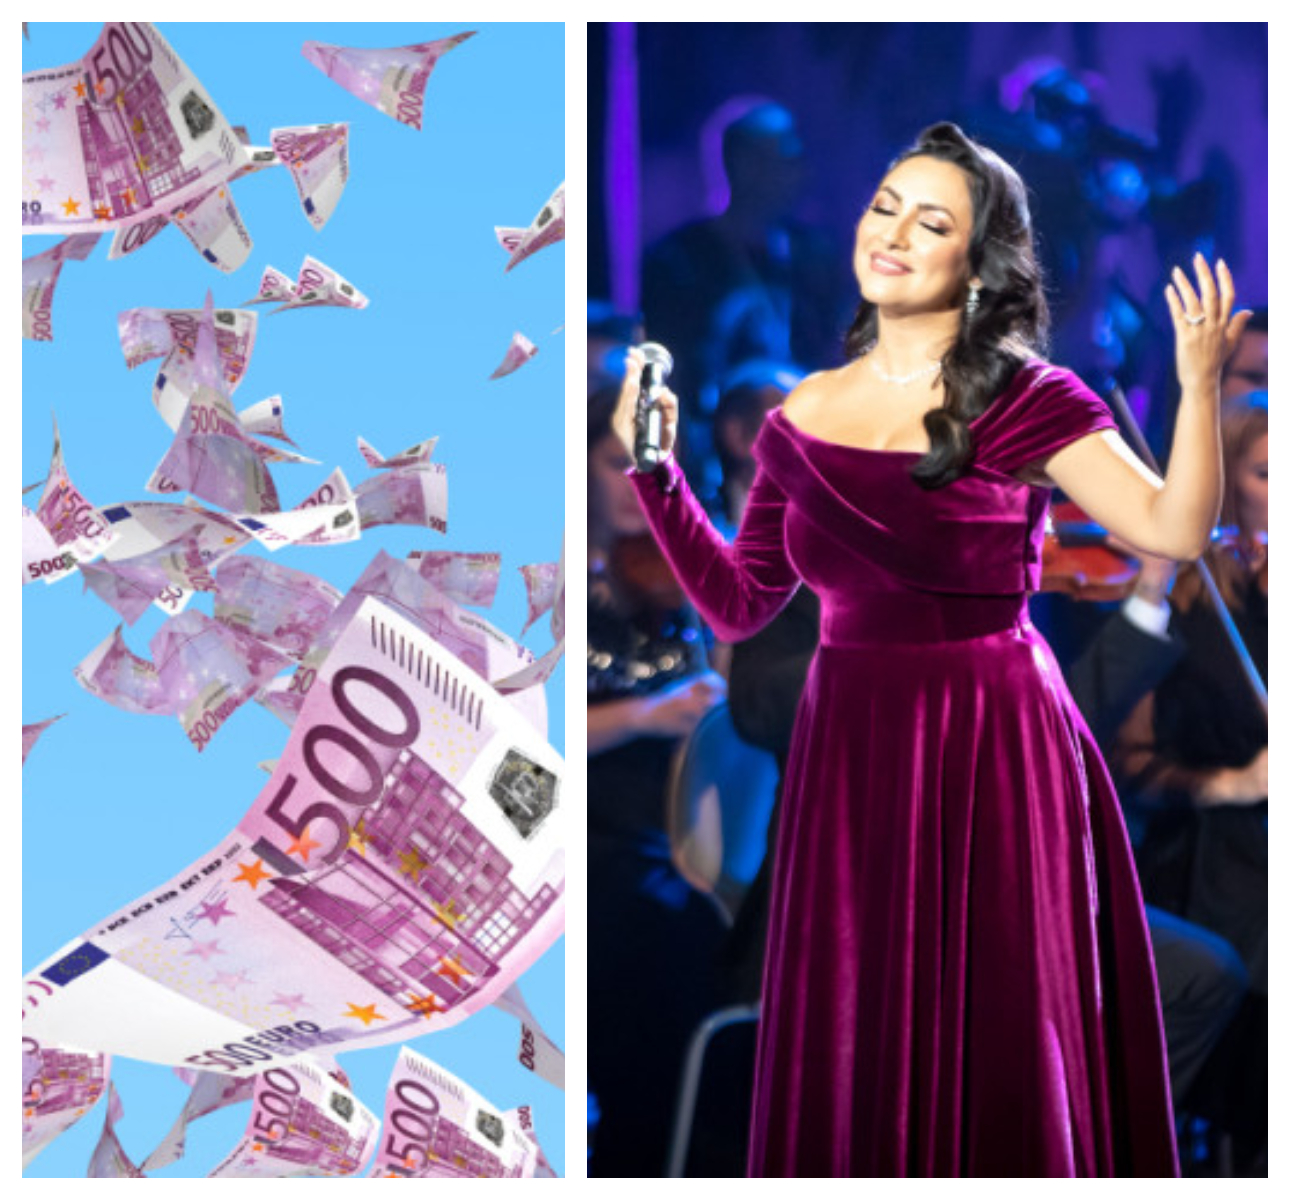 Andra Măruță despre banii oferiți la spectacole: ”Dacă aș fi primit bacșiș aș fi fost milionară în euro”